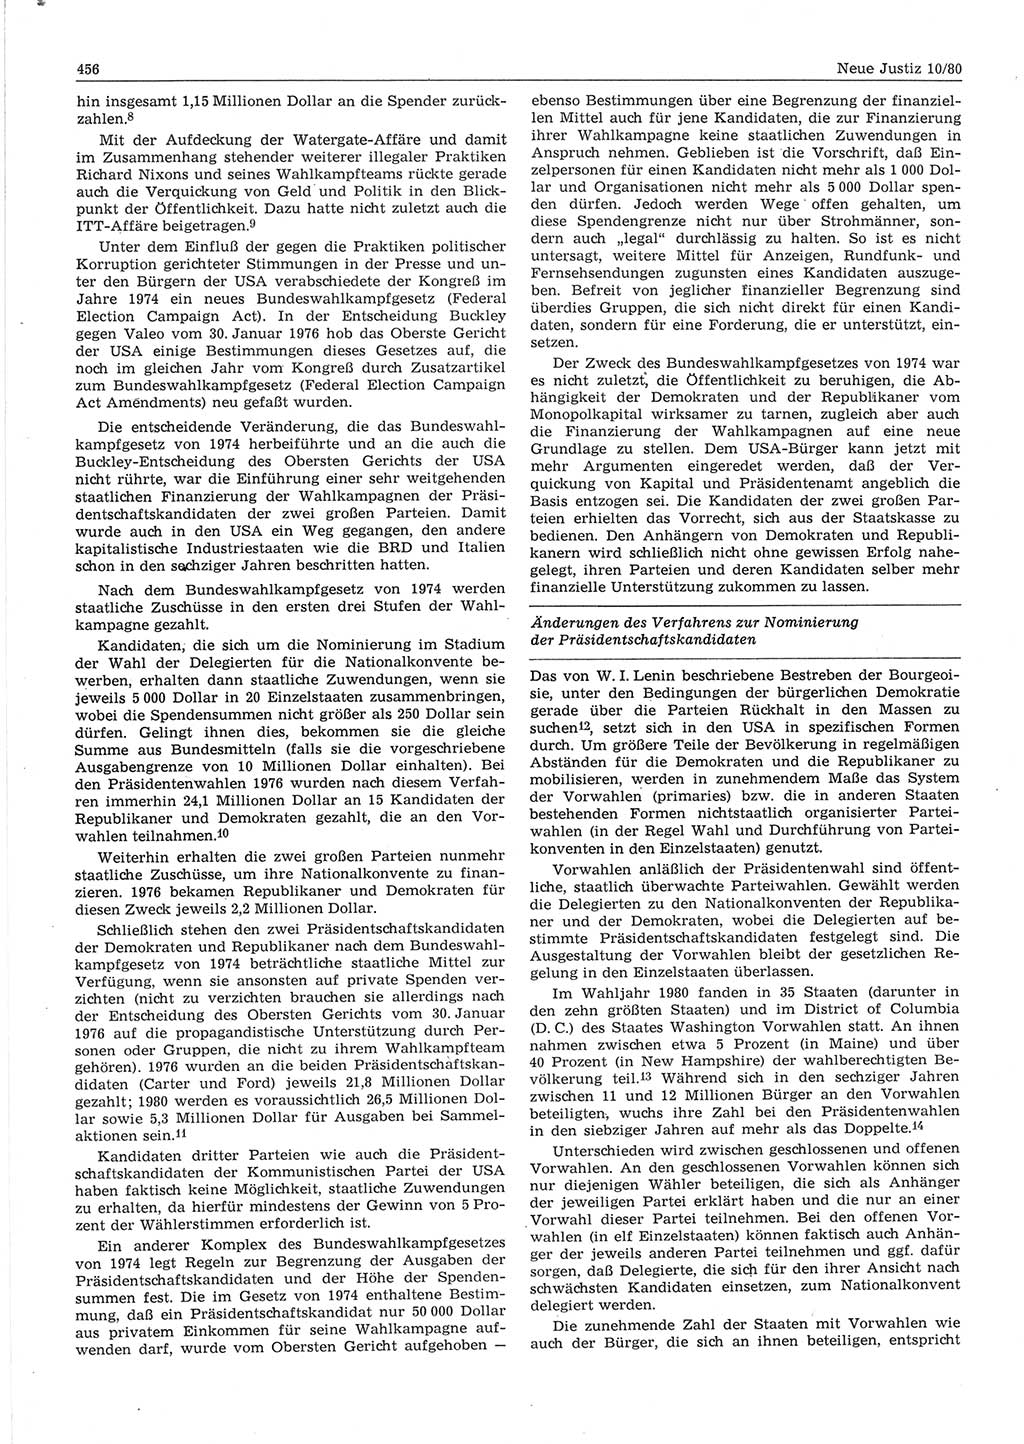 Neue Justiz (NJ), Zeitschrift für sozialistisches Recht und Gesetzlichkeit [Deutsche Demokratische Republik (DDR)], 34. Jahrgang 1980, Seite 456 (NJ DDR 1980, S. 456)